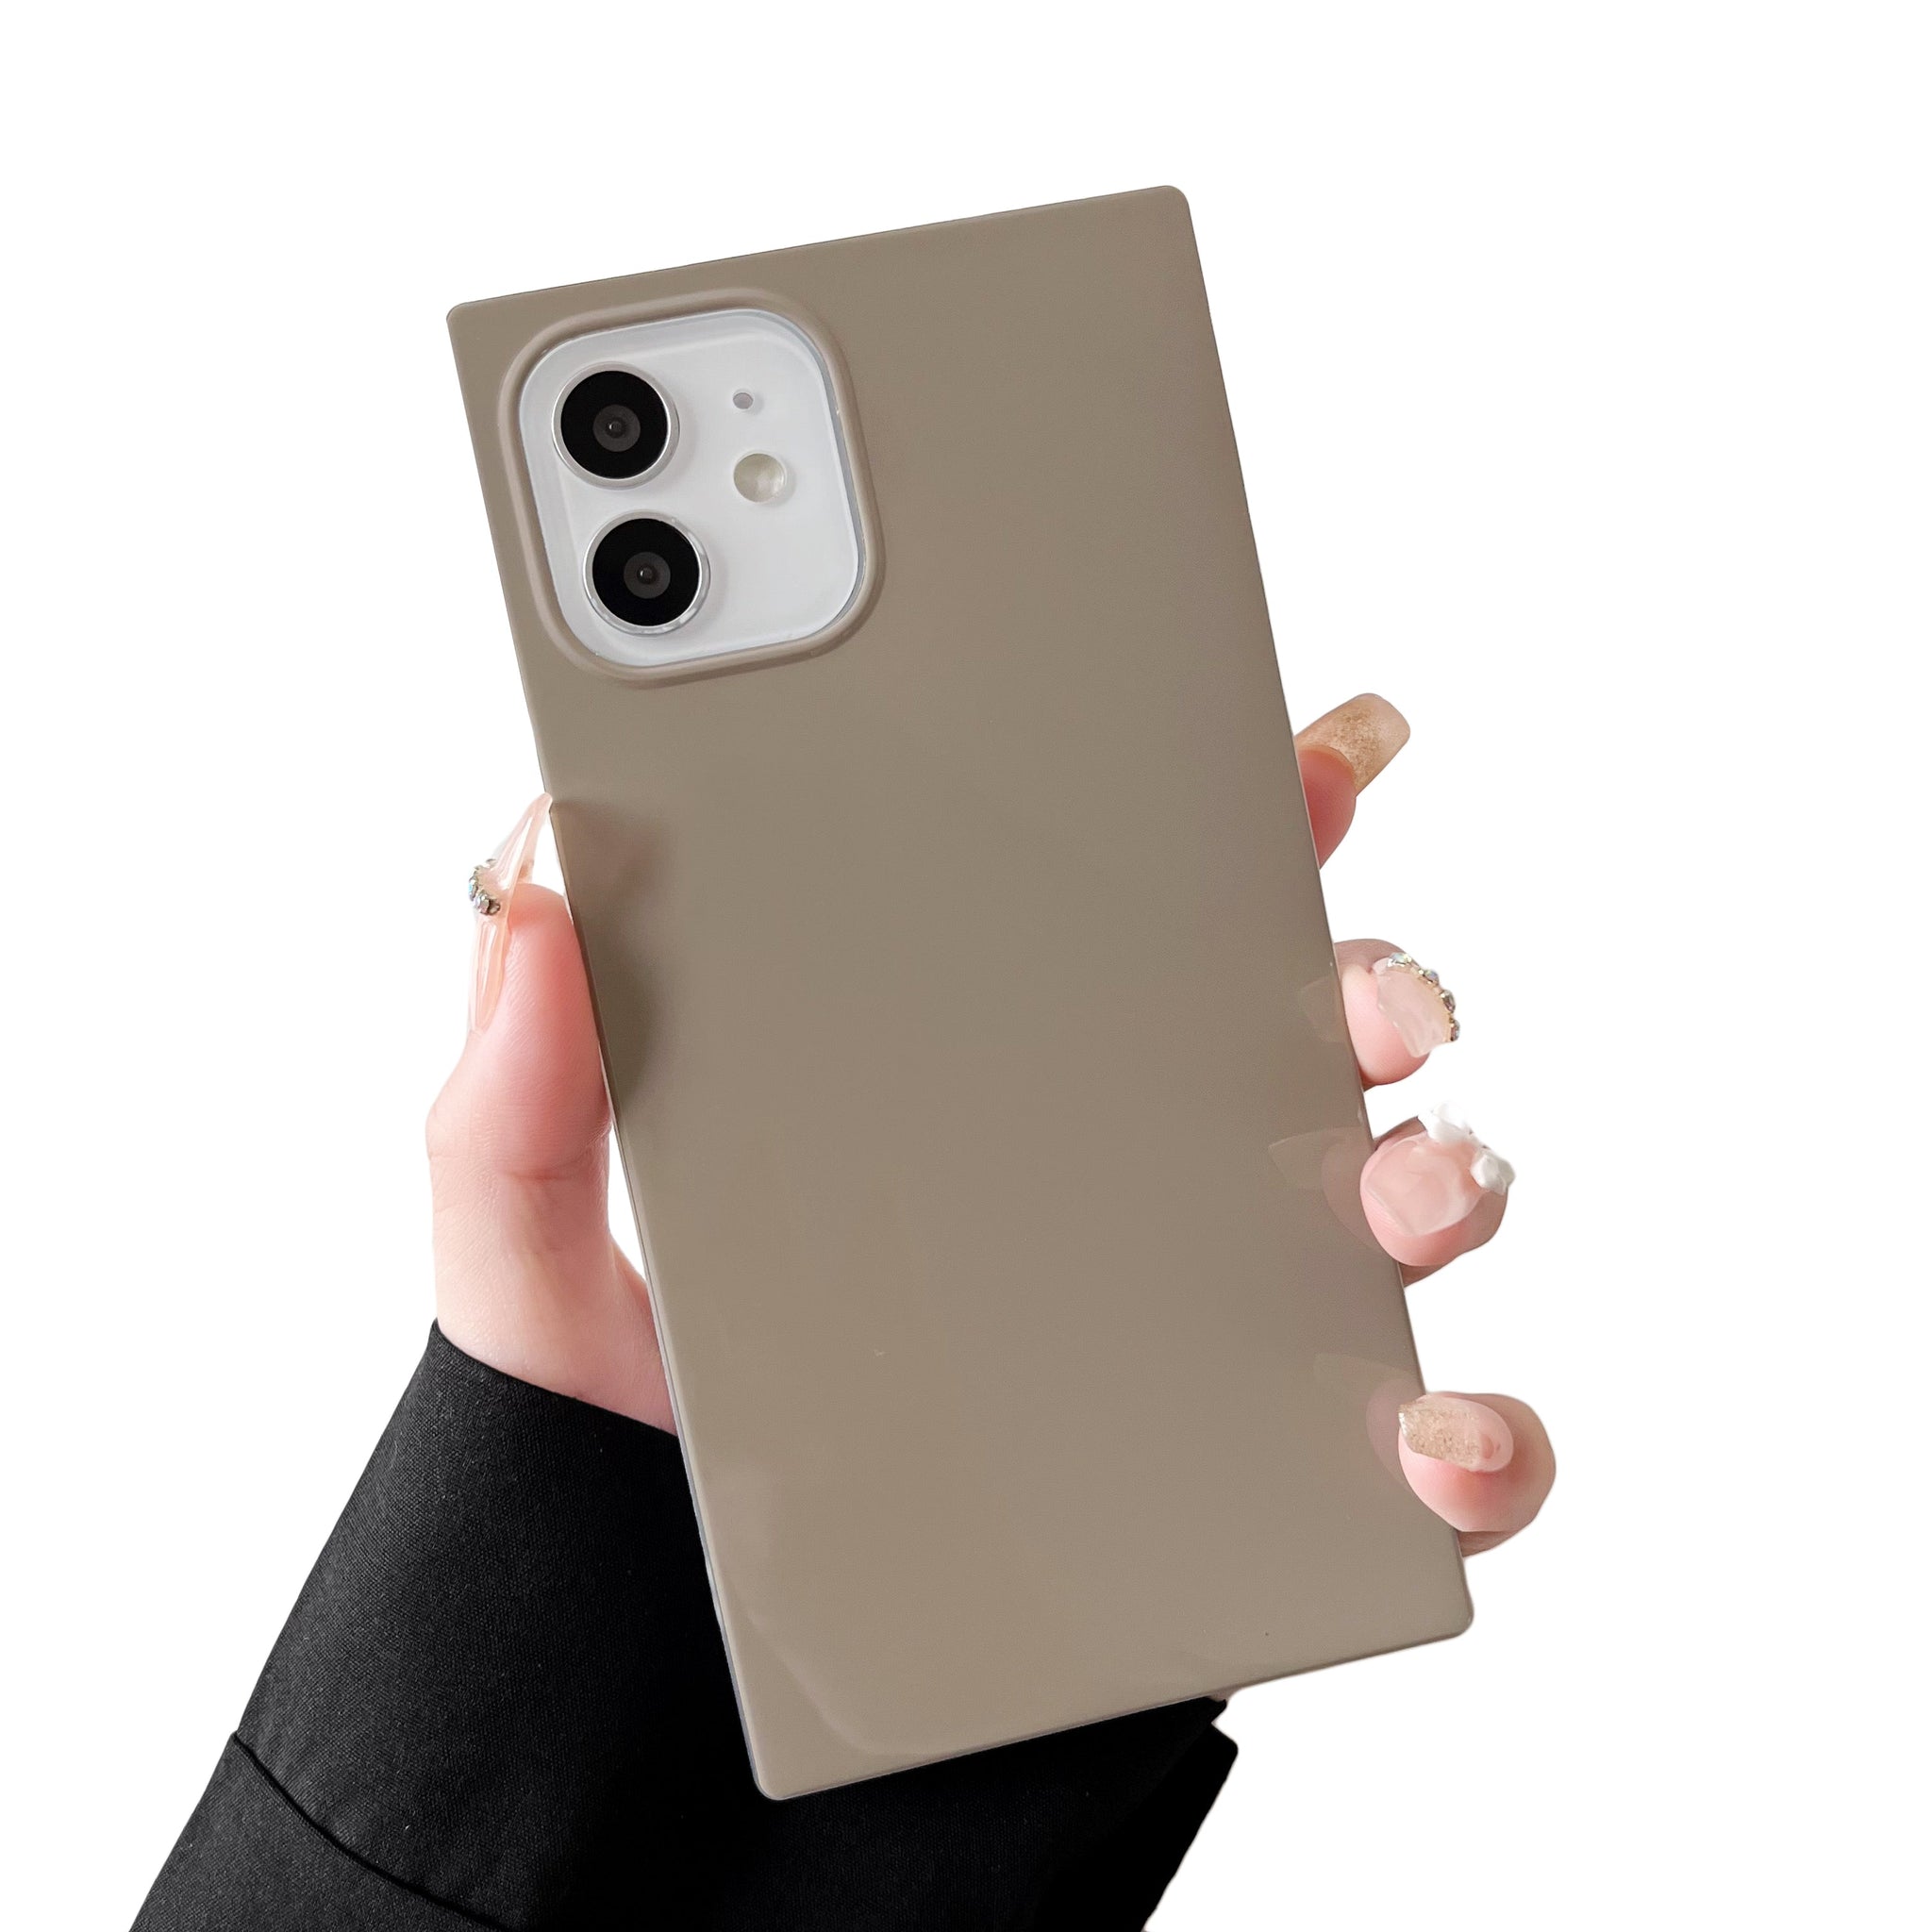 iPhone 12 mini Case Square Neutral Plain Color (Asphalt Gray)